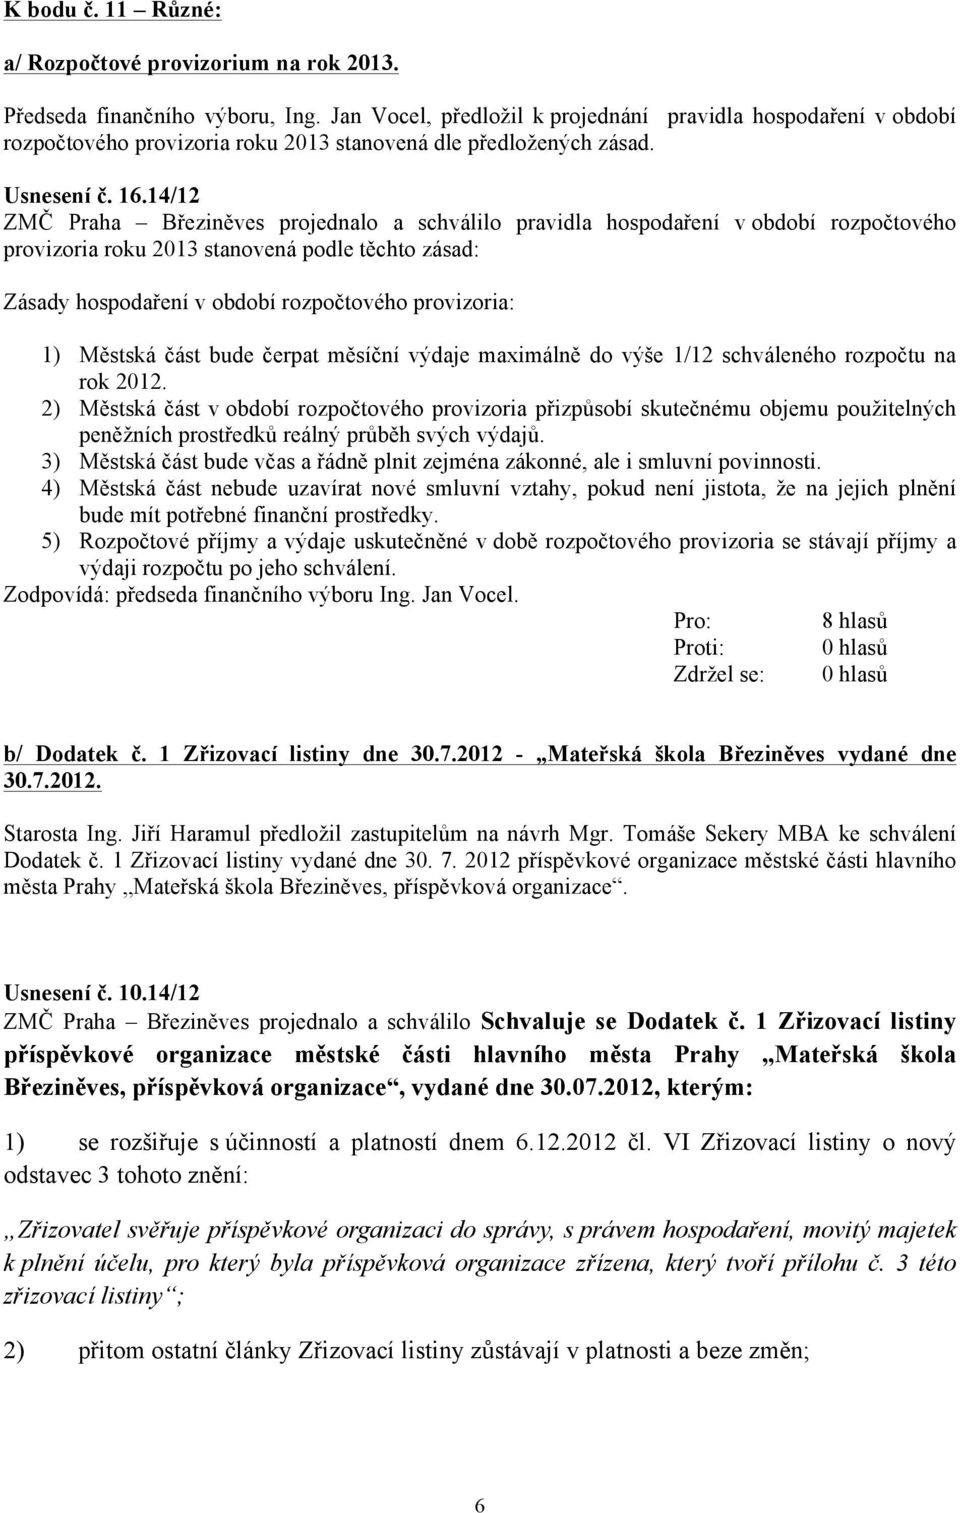 14/12 ZMČ Praha Březiněves projednalo a schválilo pravidla hospodaření v období rozpočtového provizoria roku 2013 stanovená podle těchto zásad: Zásady hospodaření v období rozpočtového provizoria: 1)